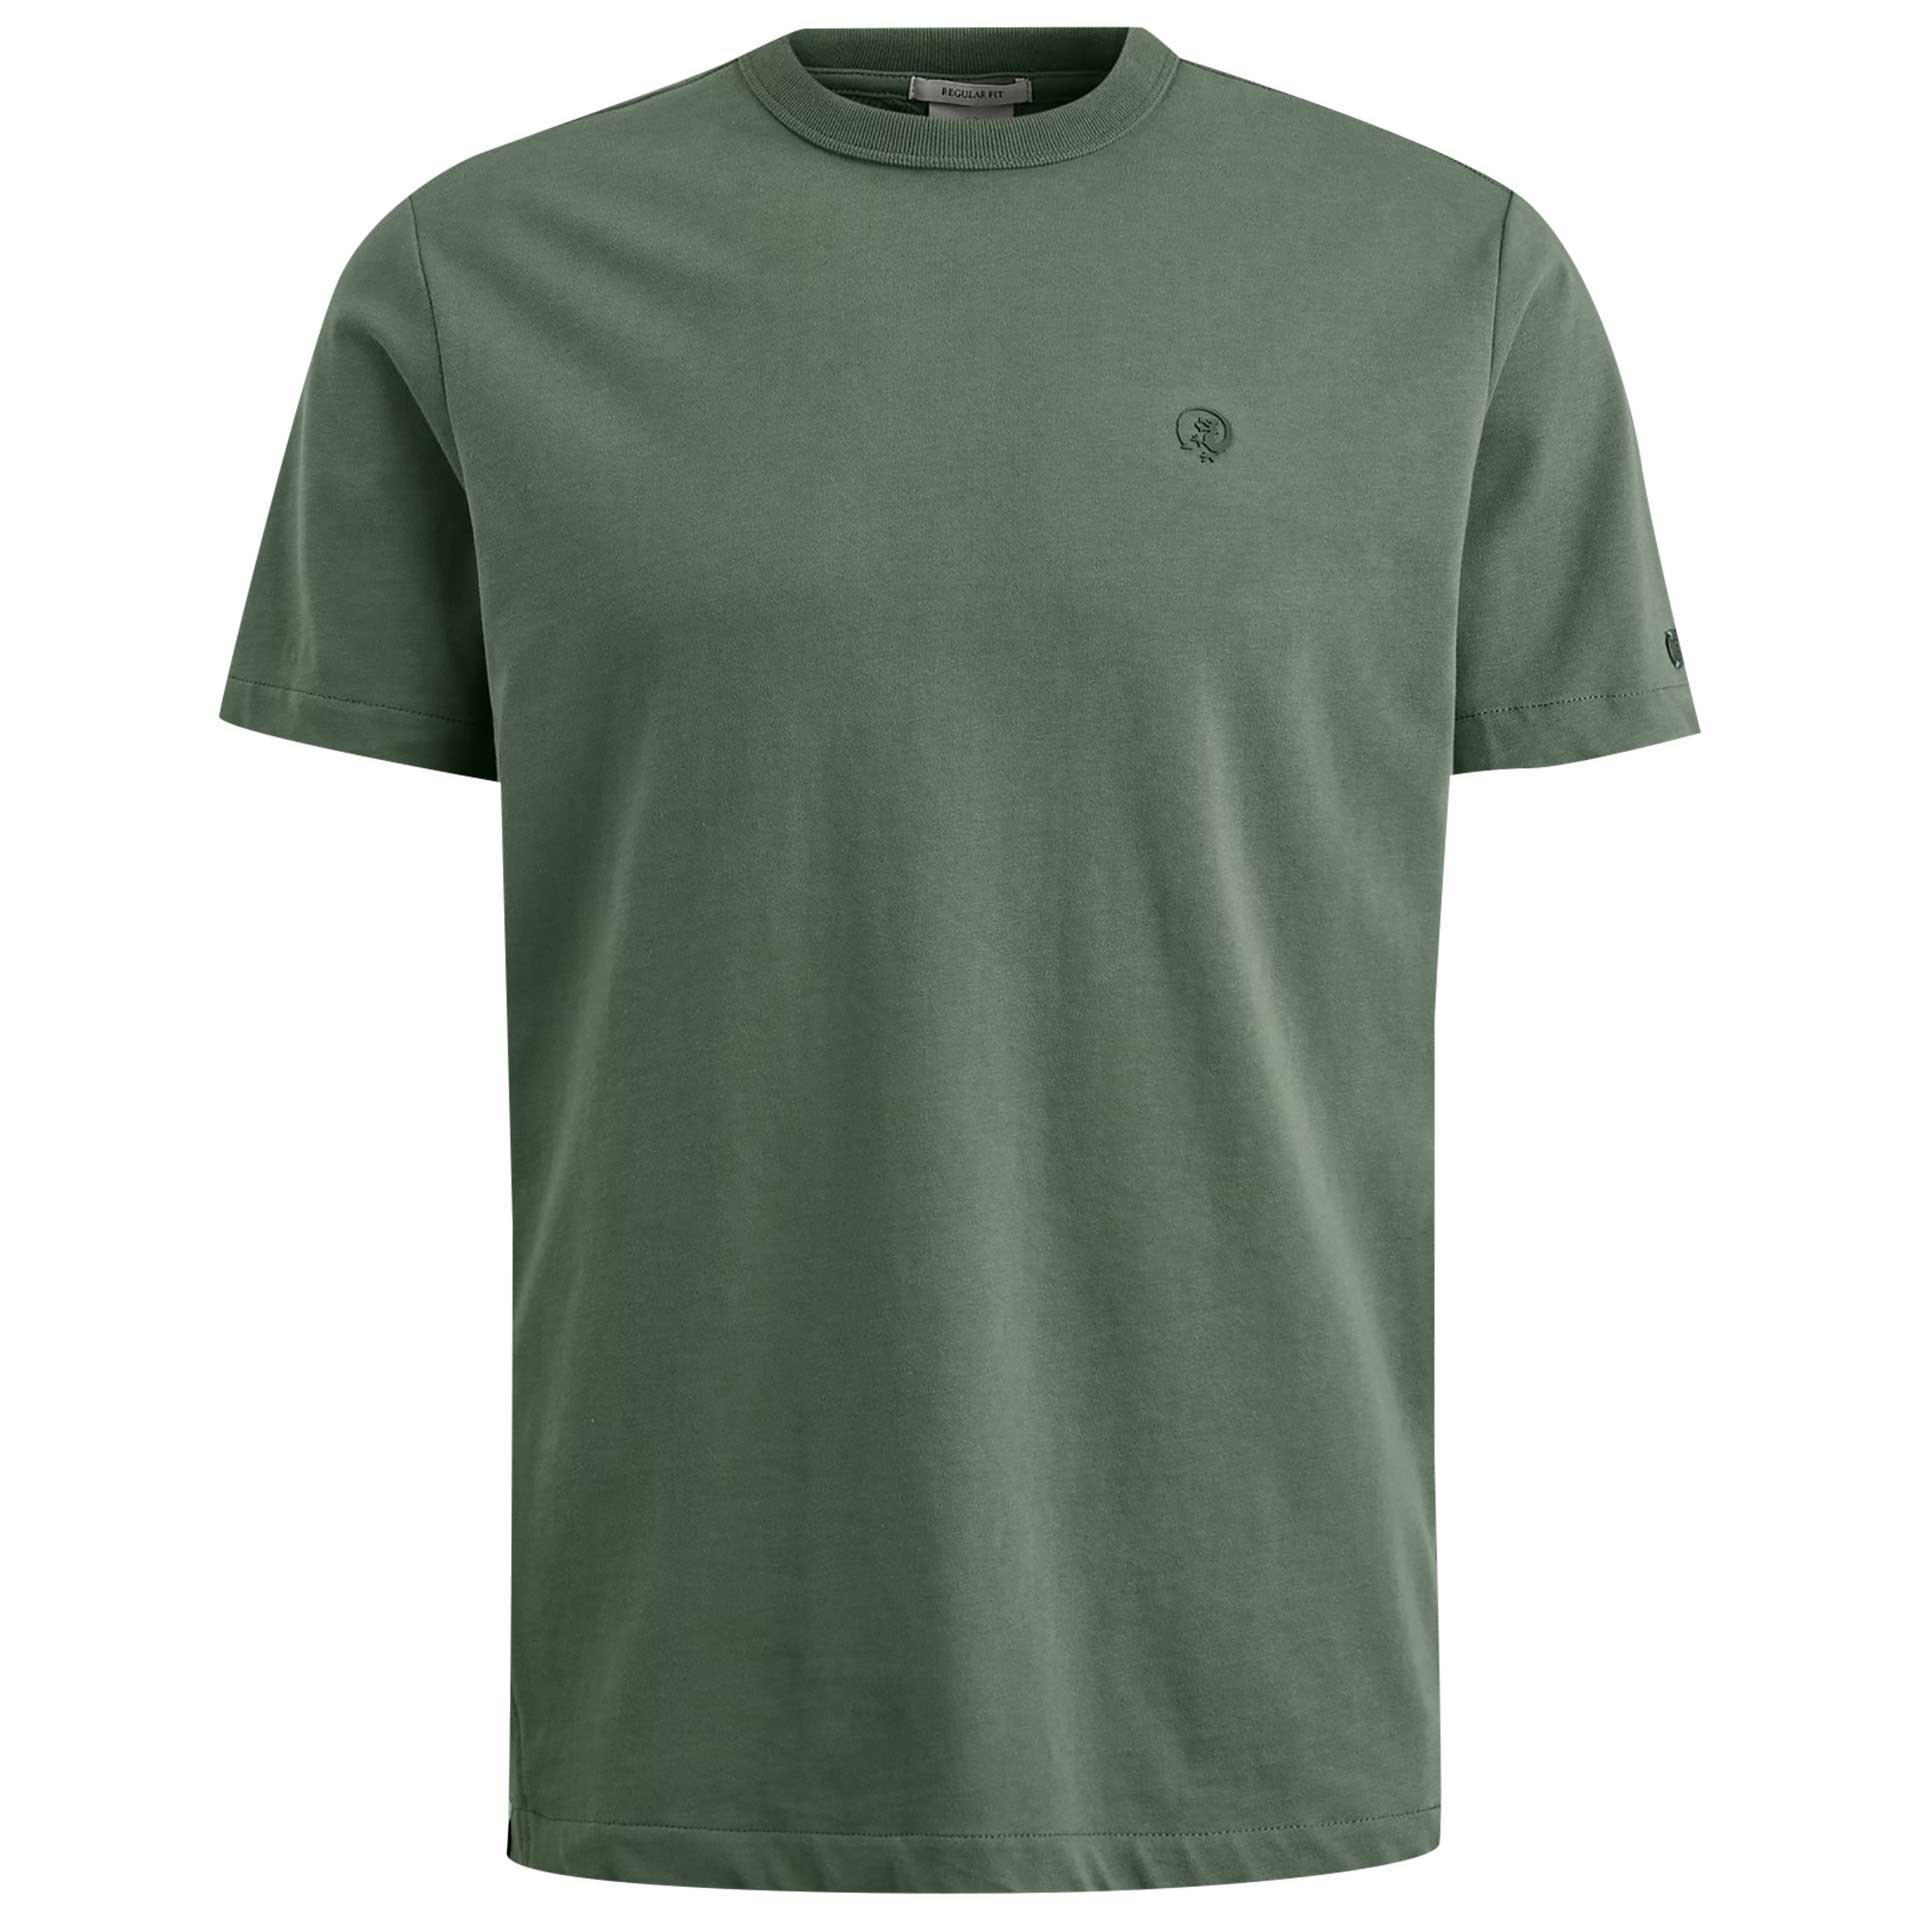 Cast Iron T-Shirt short sleeve 1